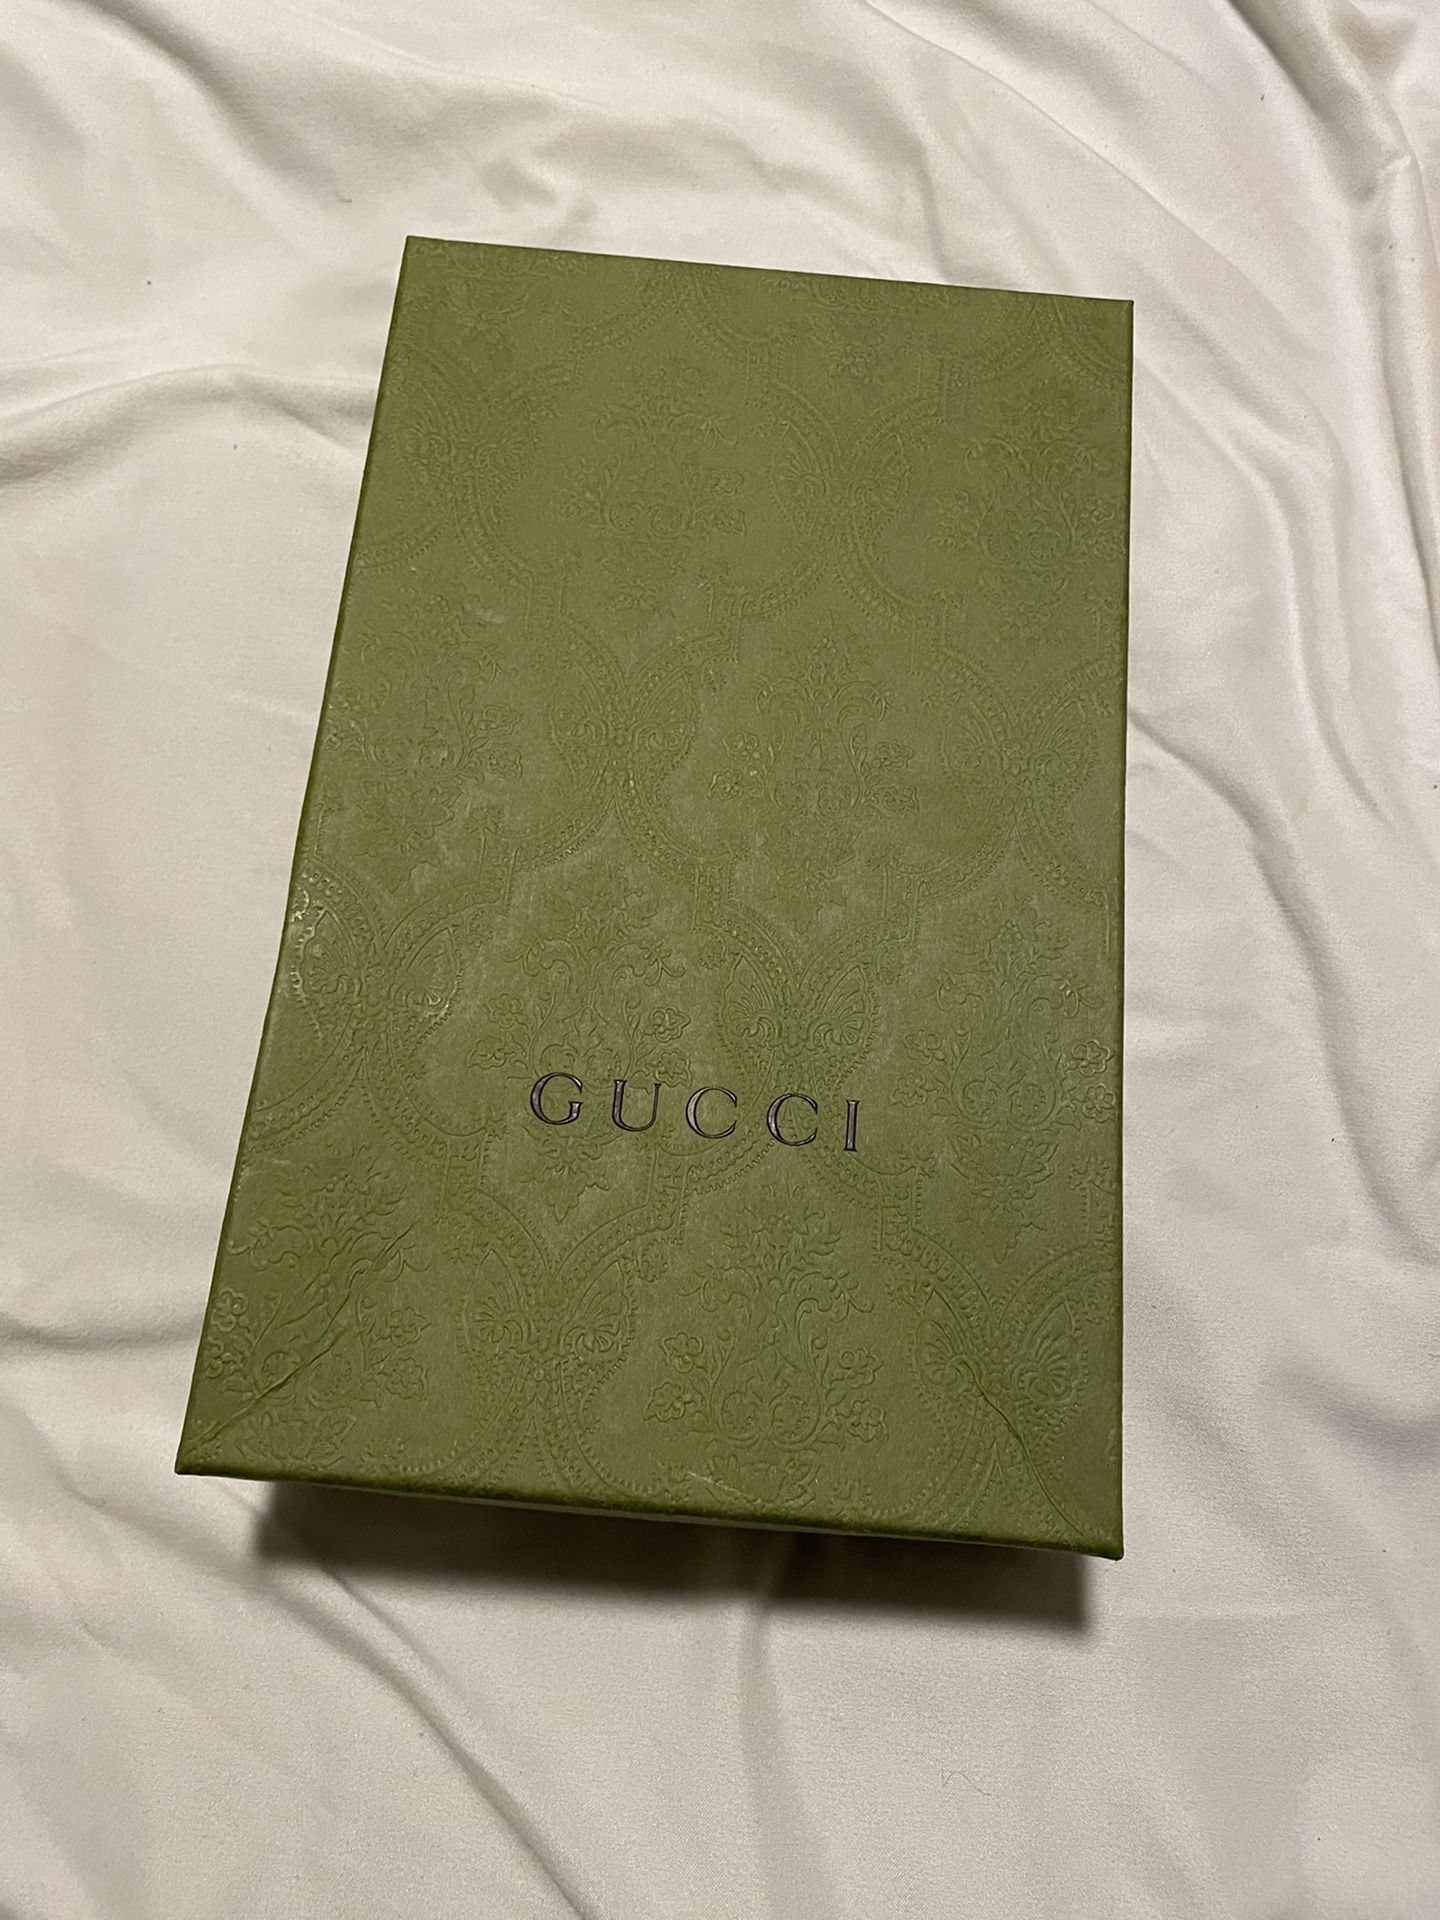 Gucci Purse Box